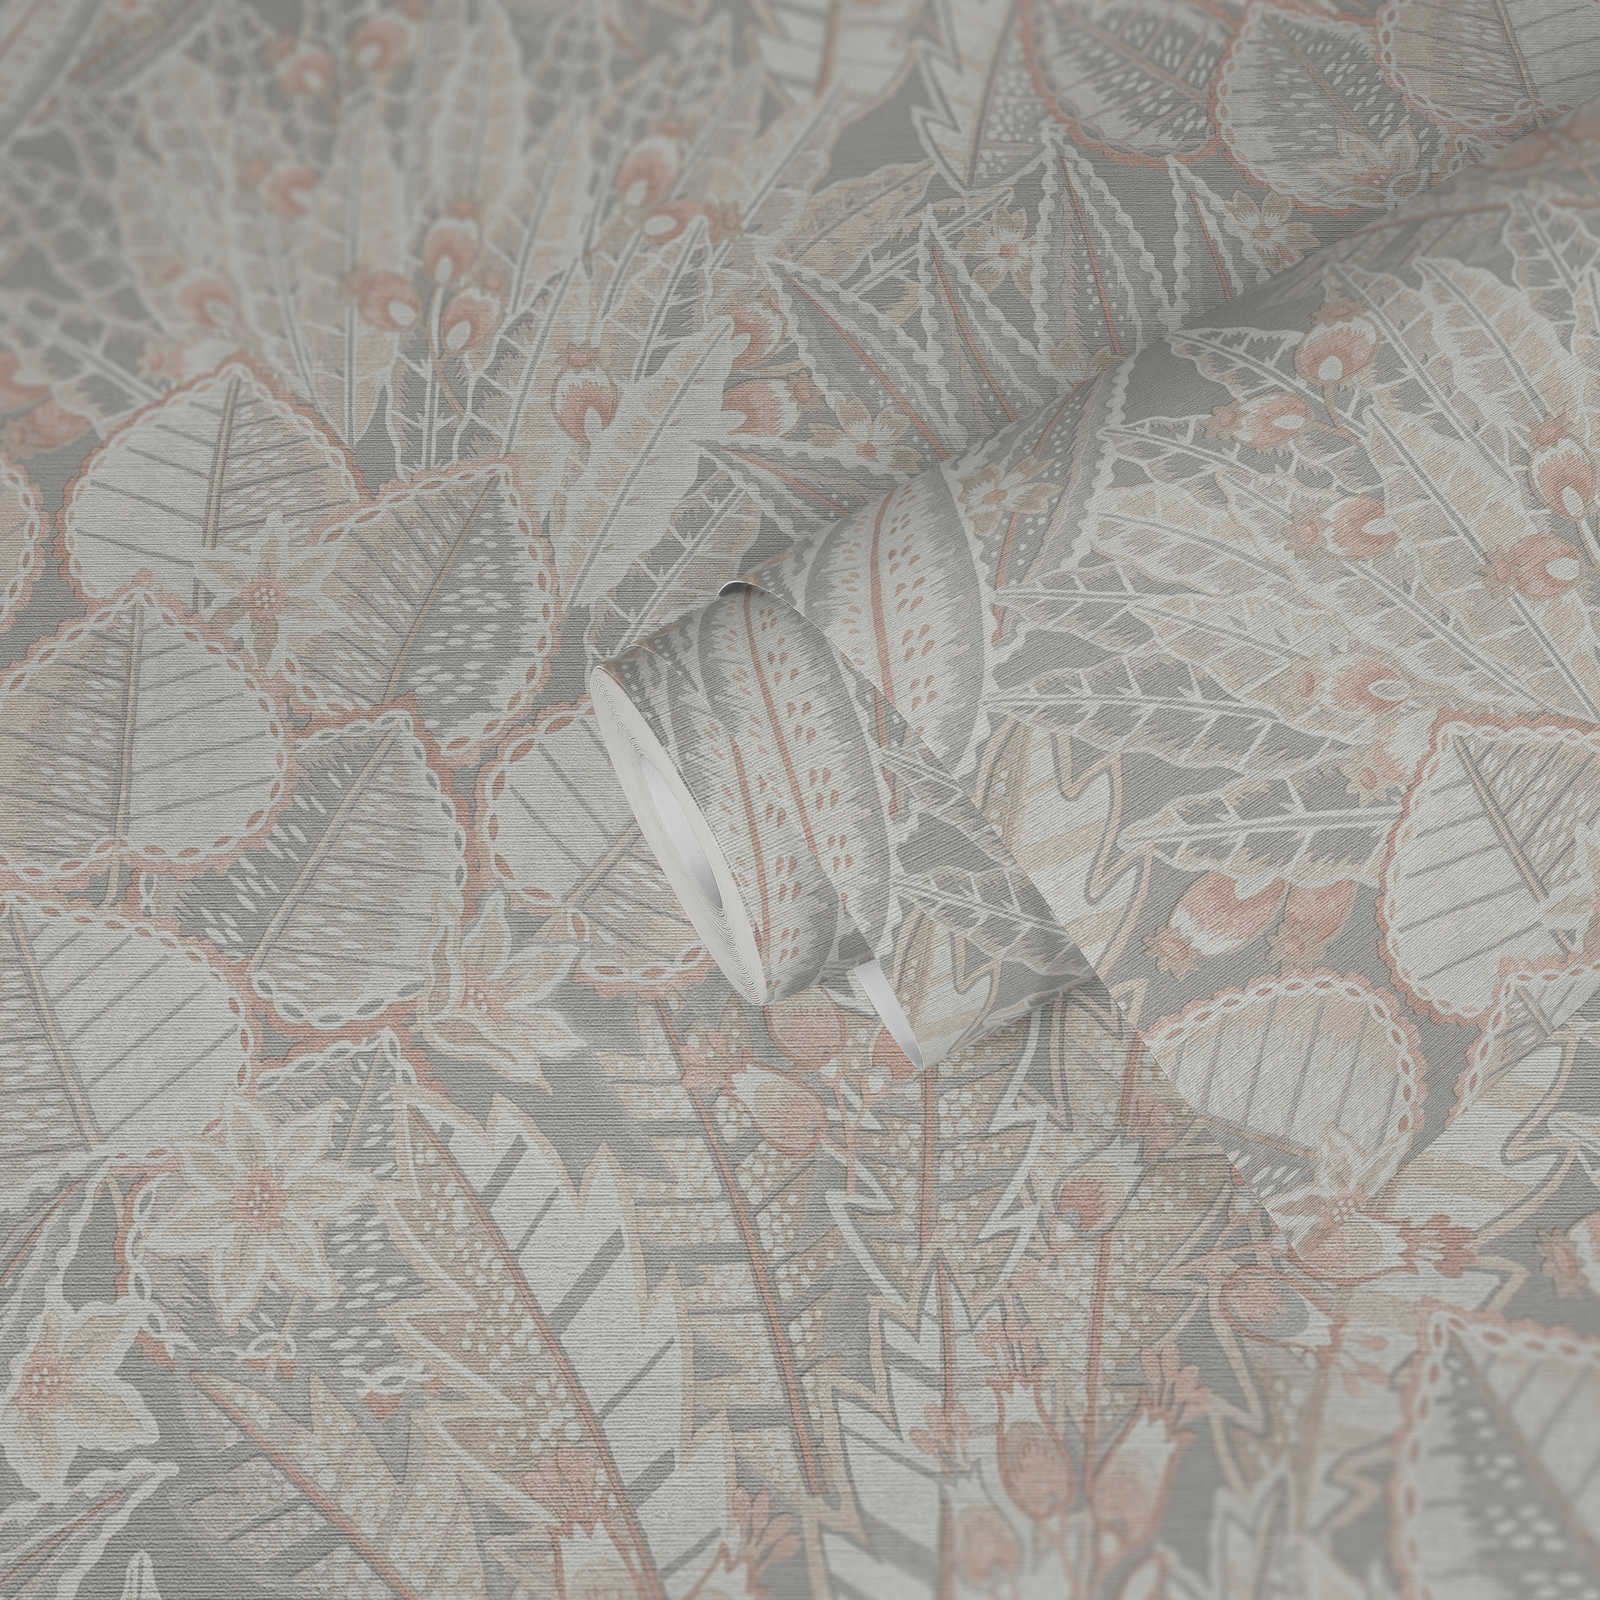             Florale Vliestapete in sanften Farben und matter Optik – Grau, Beige, Weiß
        